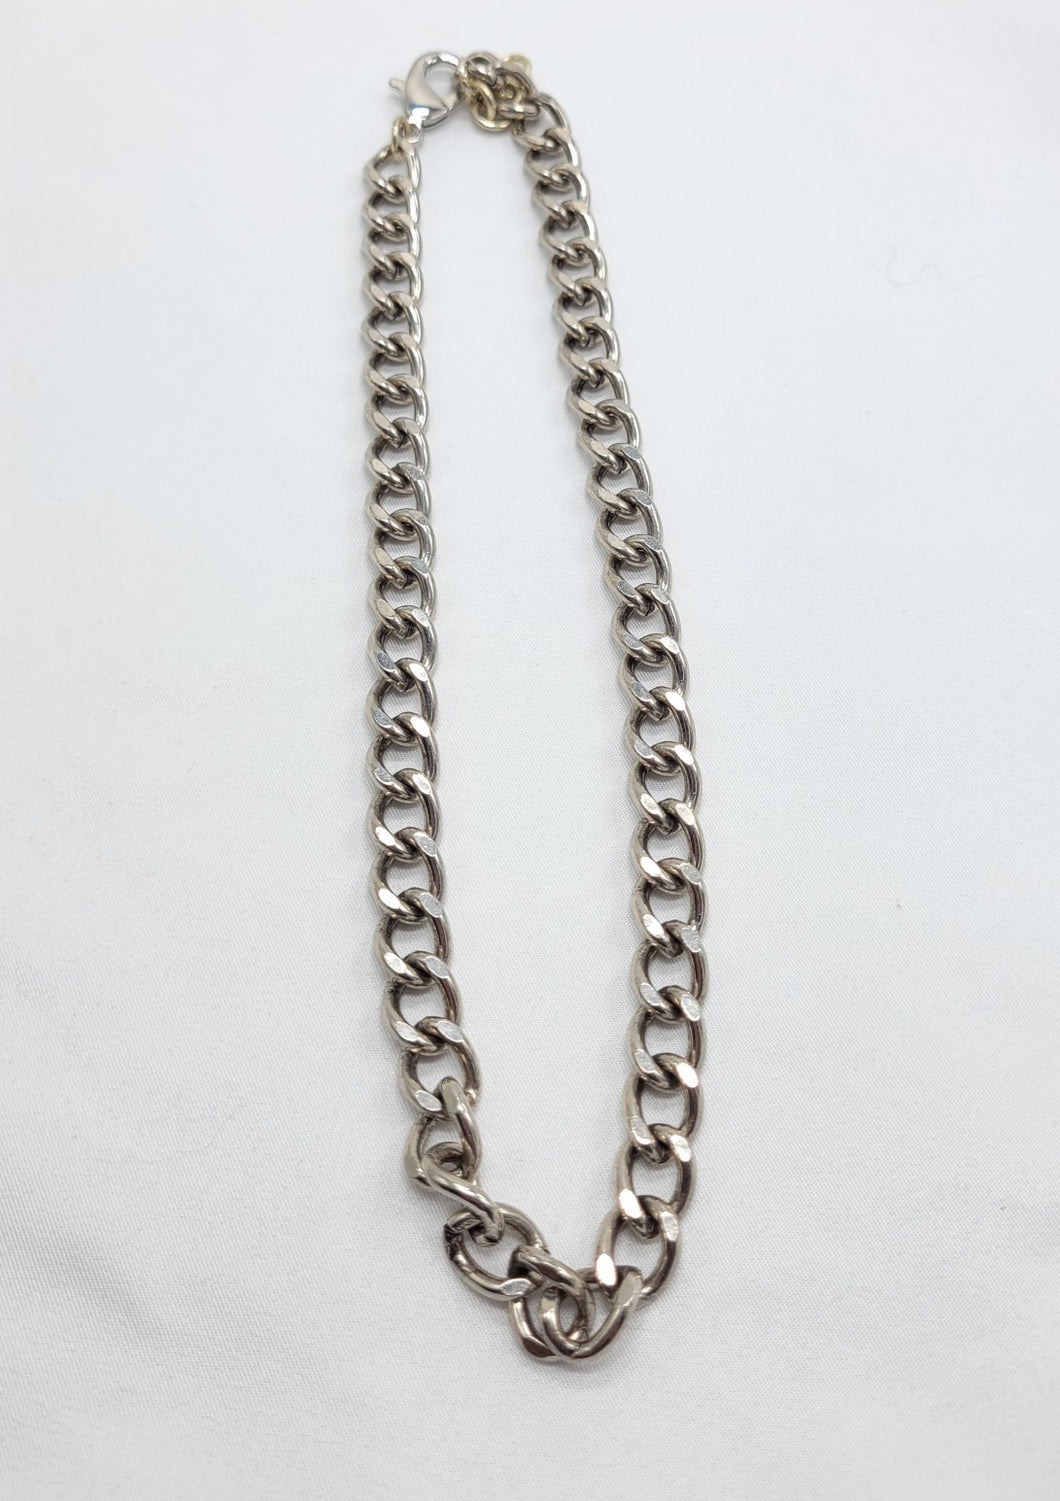 Biker chain necklace